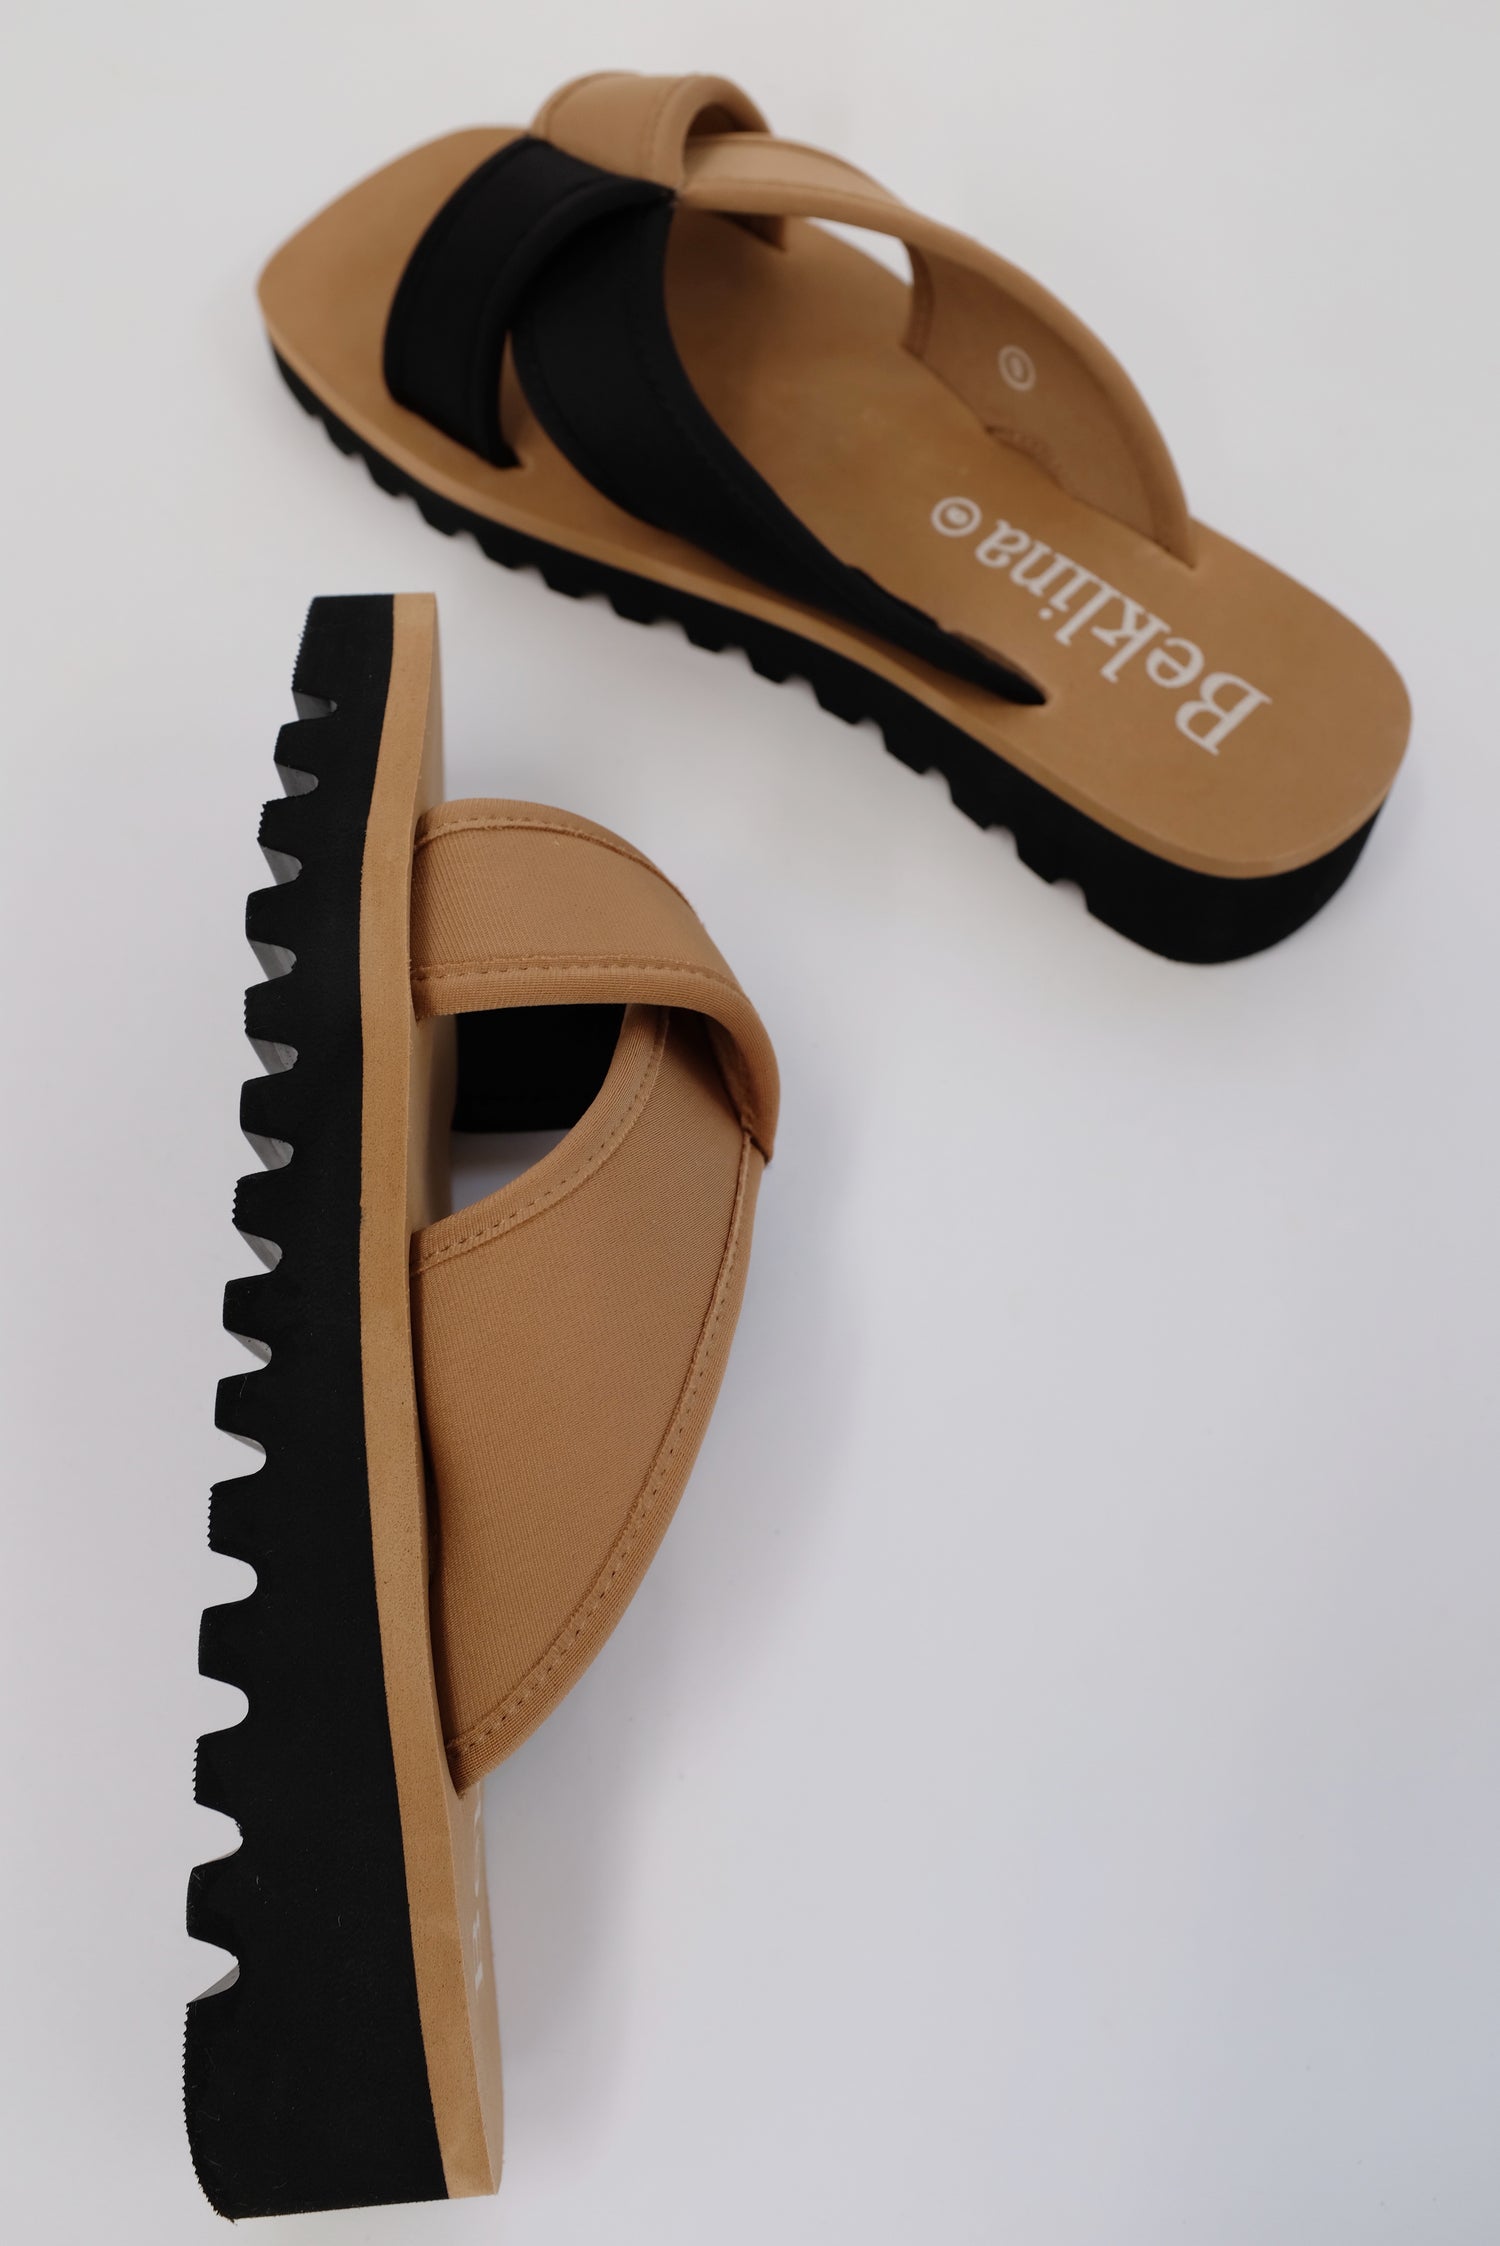 Beklina Water Sandal Slide Black/Sand